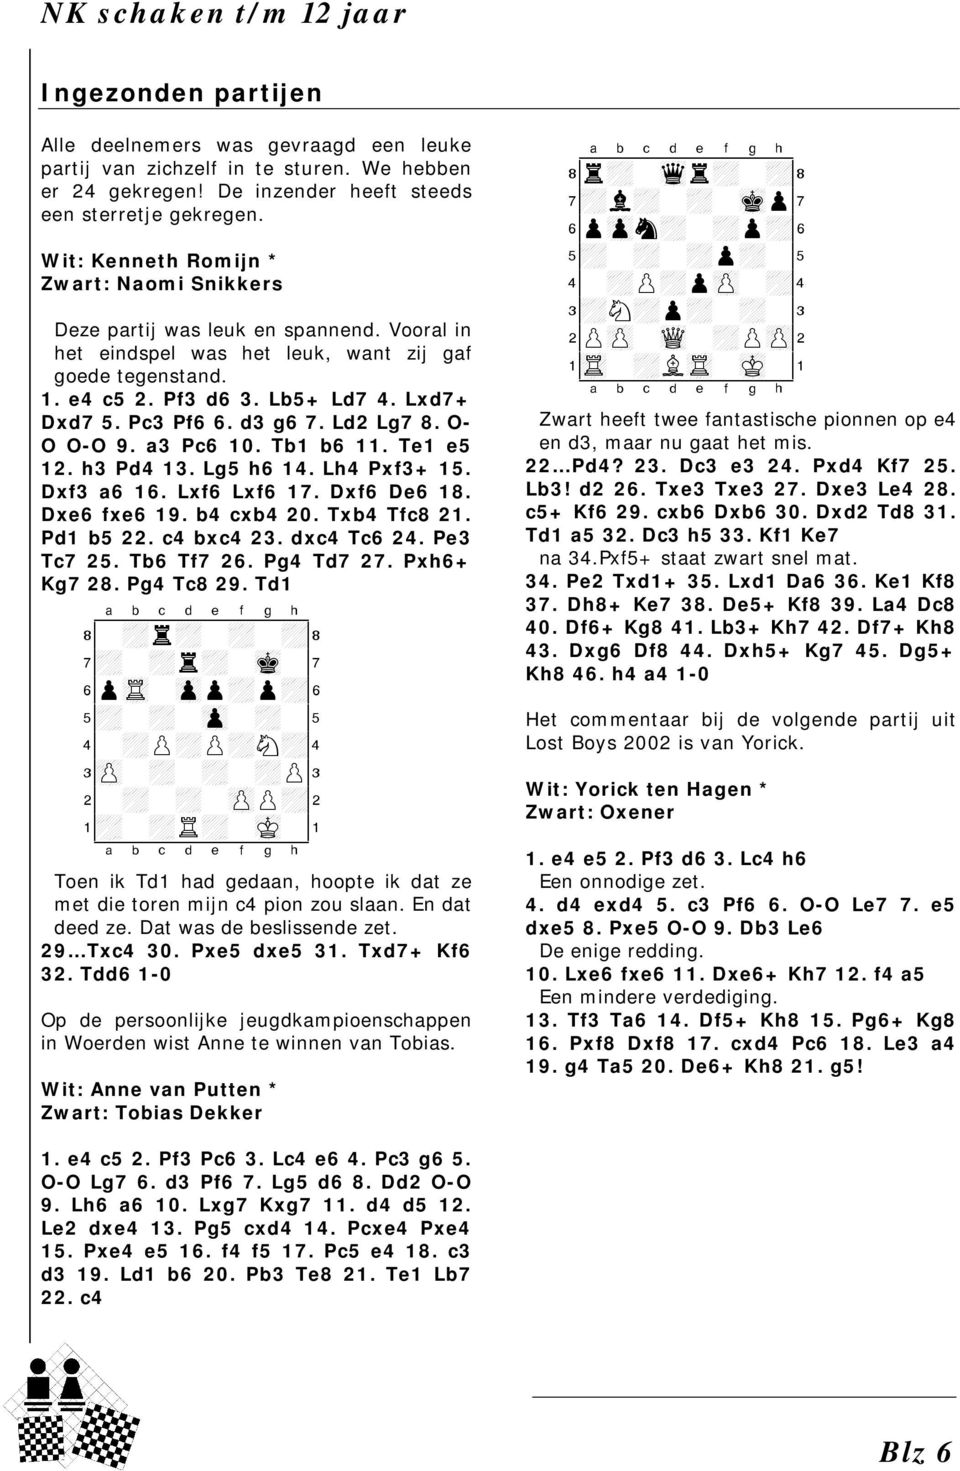 Pc3 Pf6 6. d3 g6 7. Ld2 Lg7 8. O- O O-O 9. a3 Pc6 10. Tb1 b6 11. Te1 e5 12. h3 Pd4 13. Lg5 h6 14. Lh4 Pxf3+ 15. Dxf3 a6 16. Lxf6 Lxf6 17. Dxf6 De6 18. Dxe6 fxe6 19. b4 cxb4 20. Txb4 Tfc8 21.